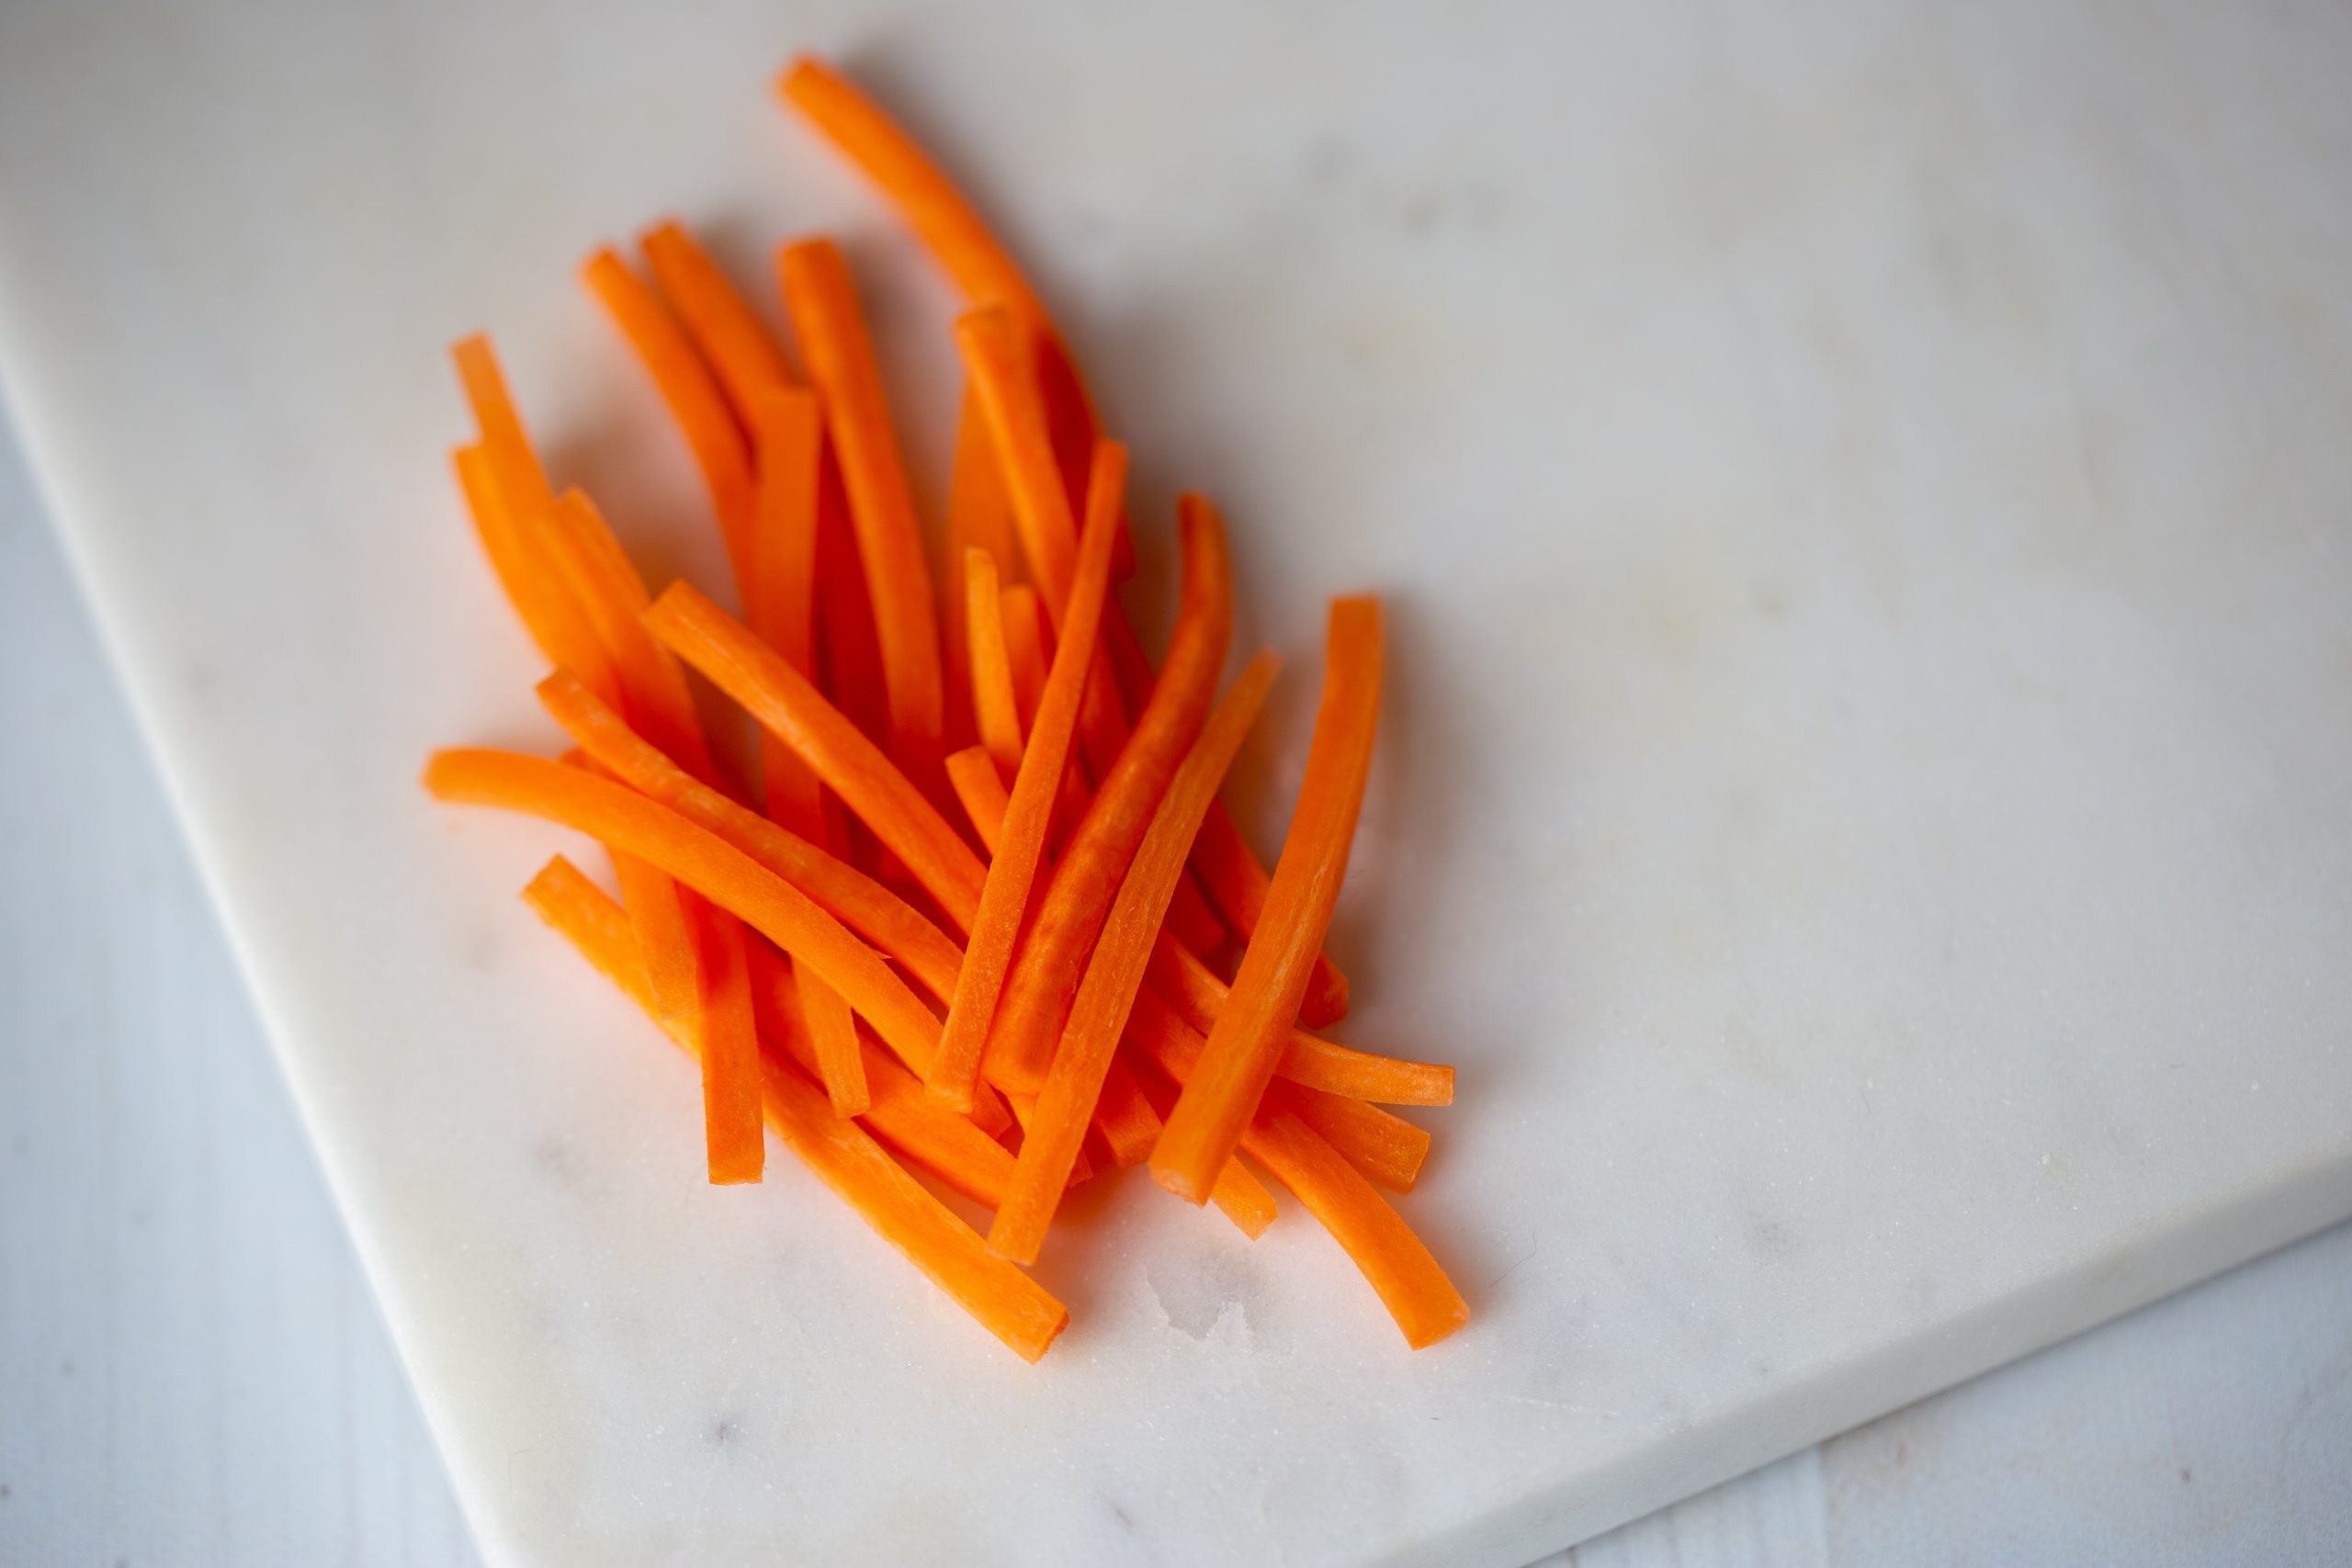 julienne carrots | knife cuts